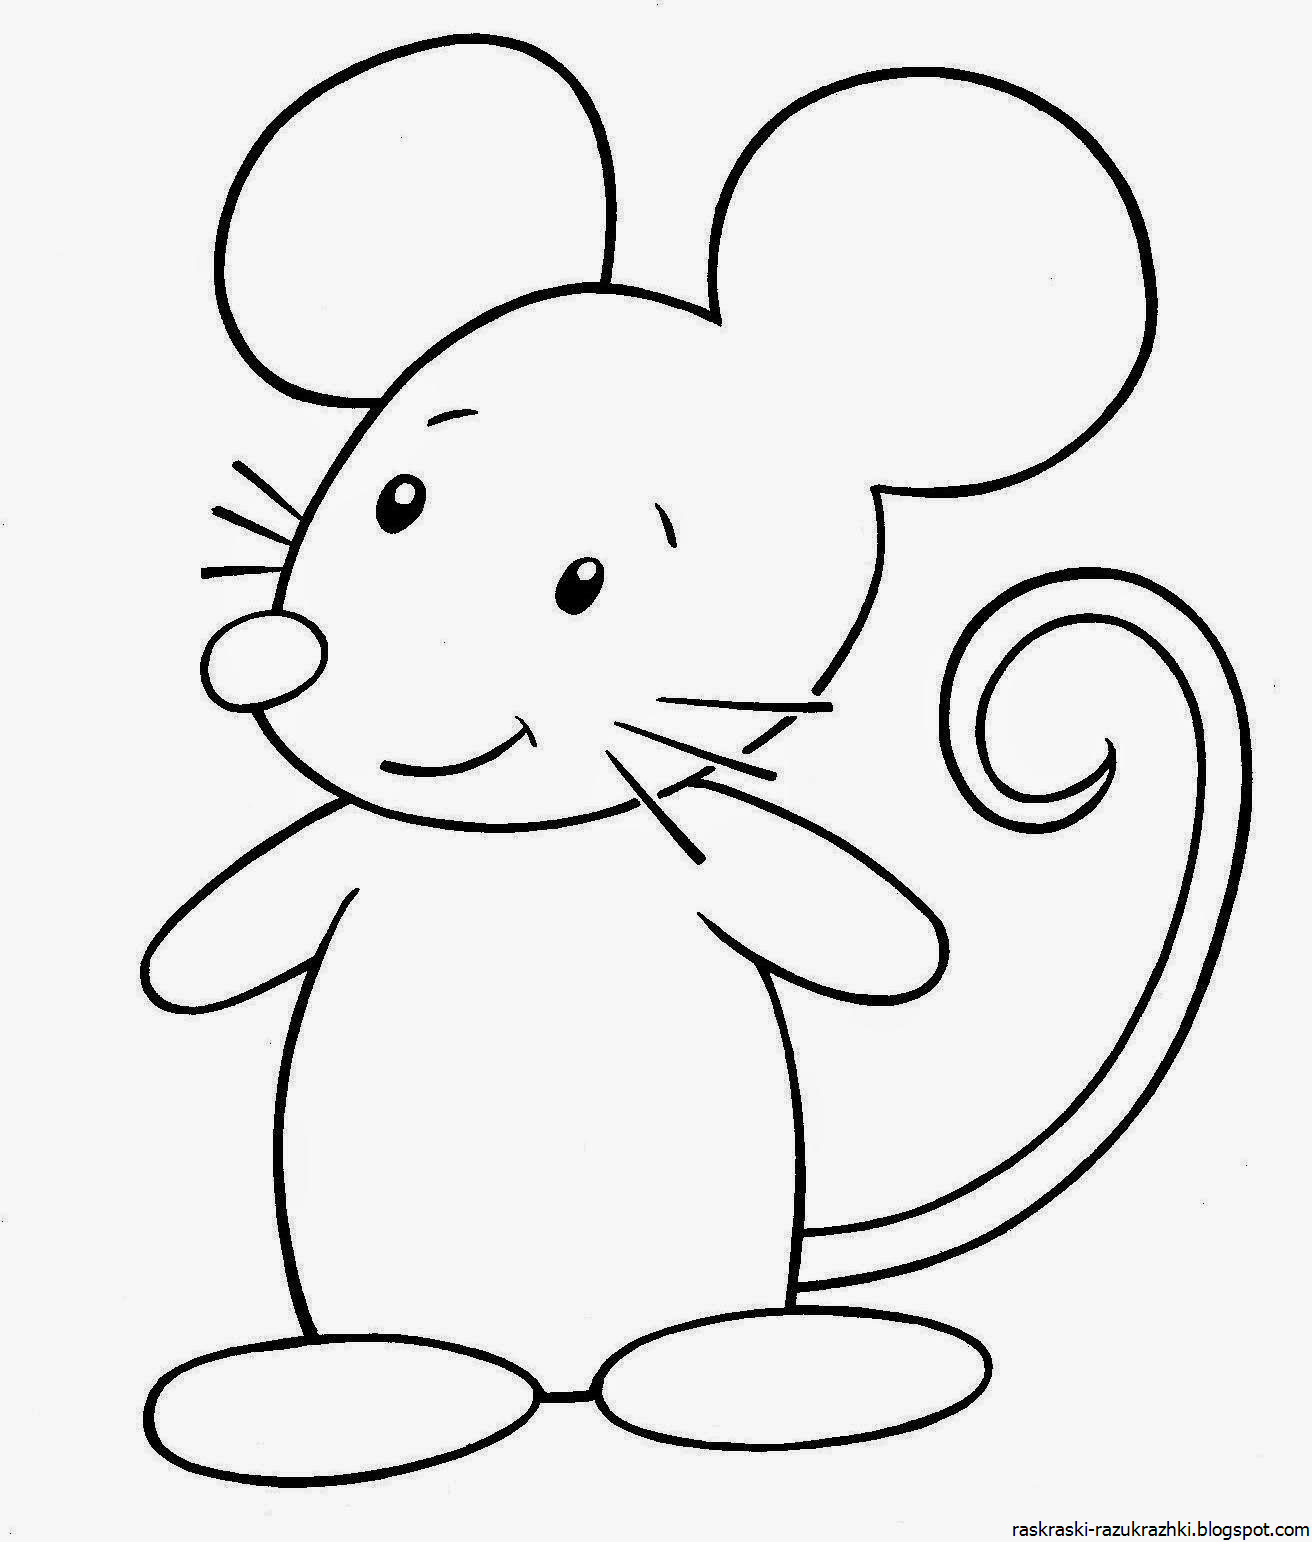 Раскраска мышь распечатать. Раскраска мышка. Мышка раскраска для детей. Мышонок раскраска для детей. Мышка рисунок.